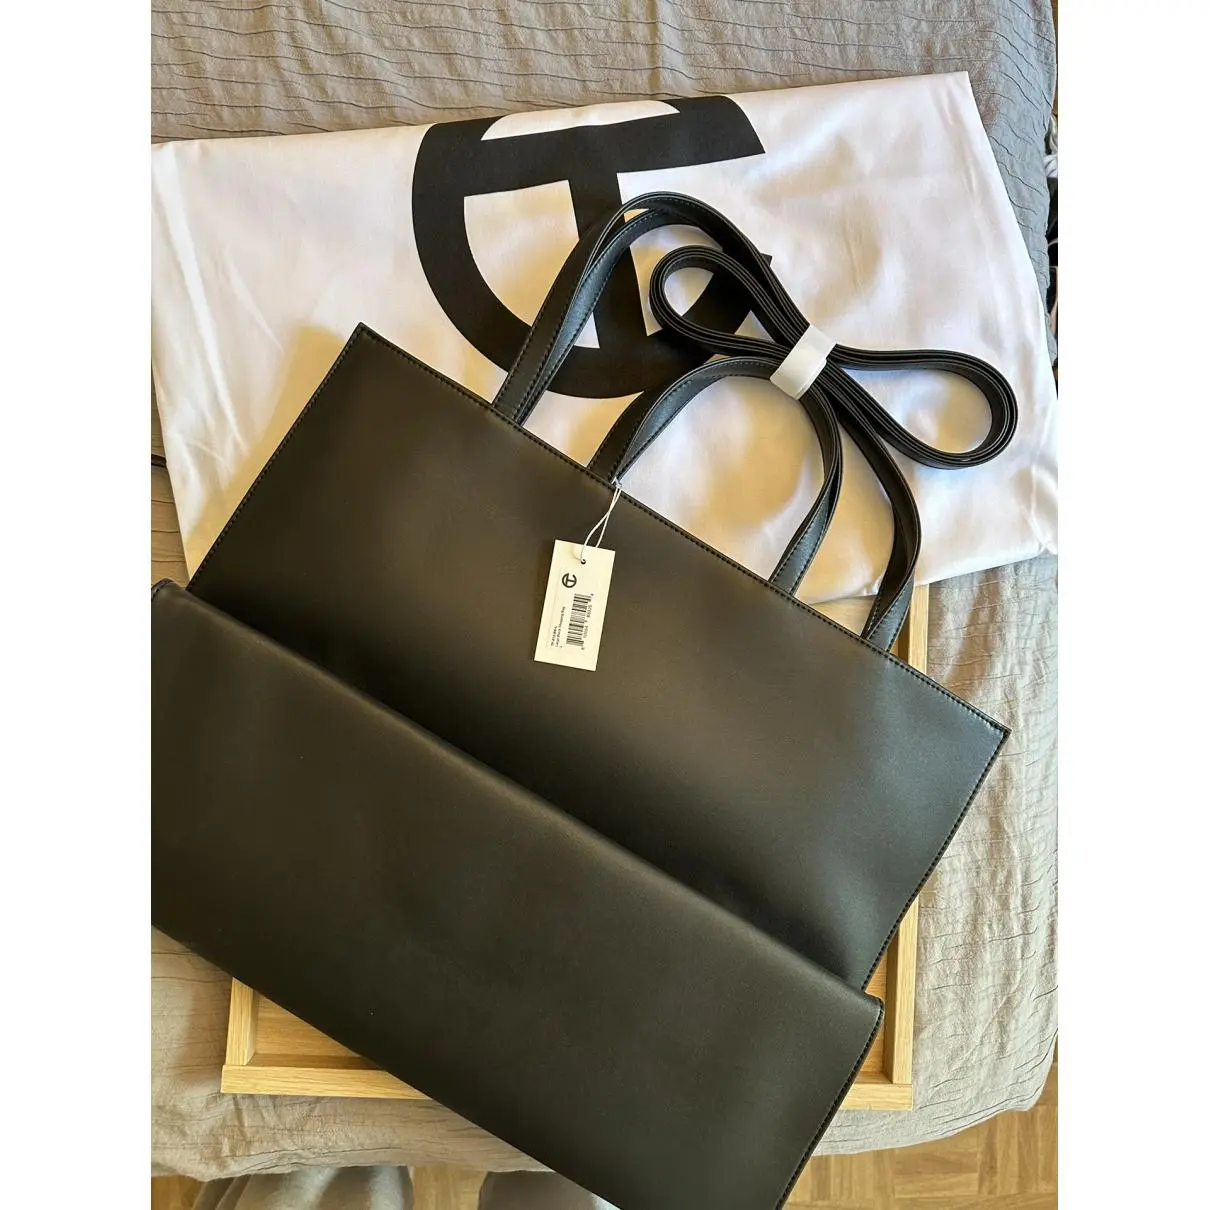 Buy Telfar Medium Shopping Bag vegan leather backpack online